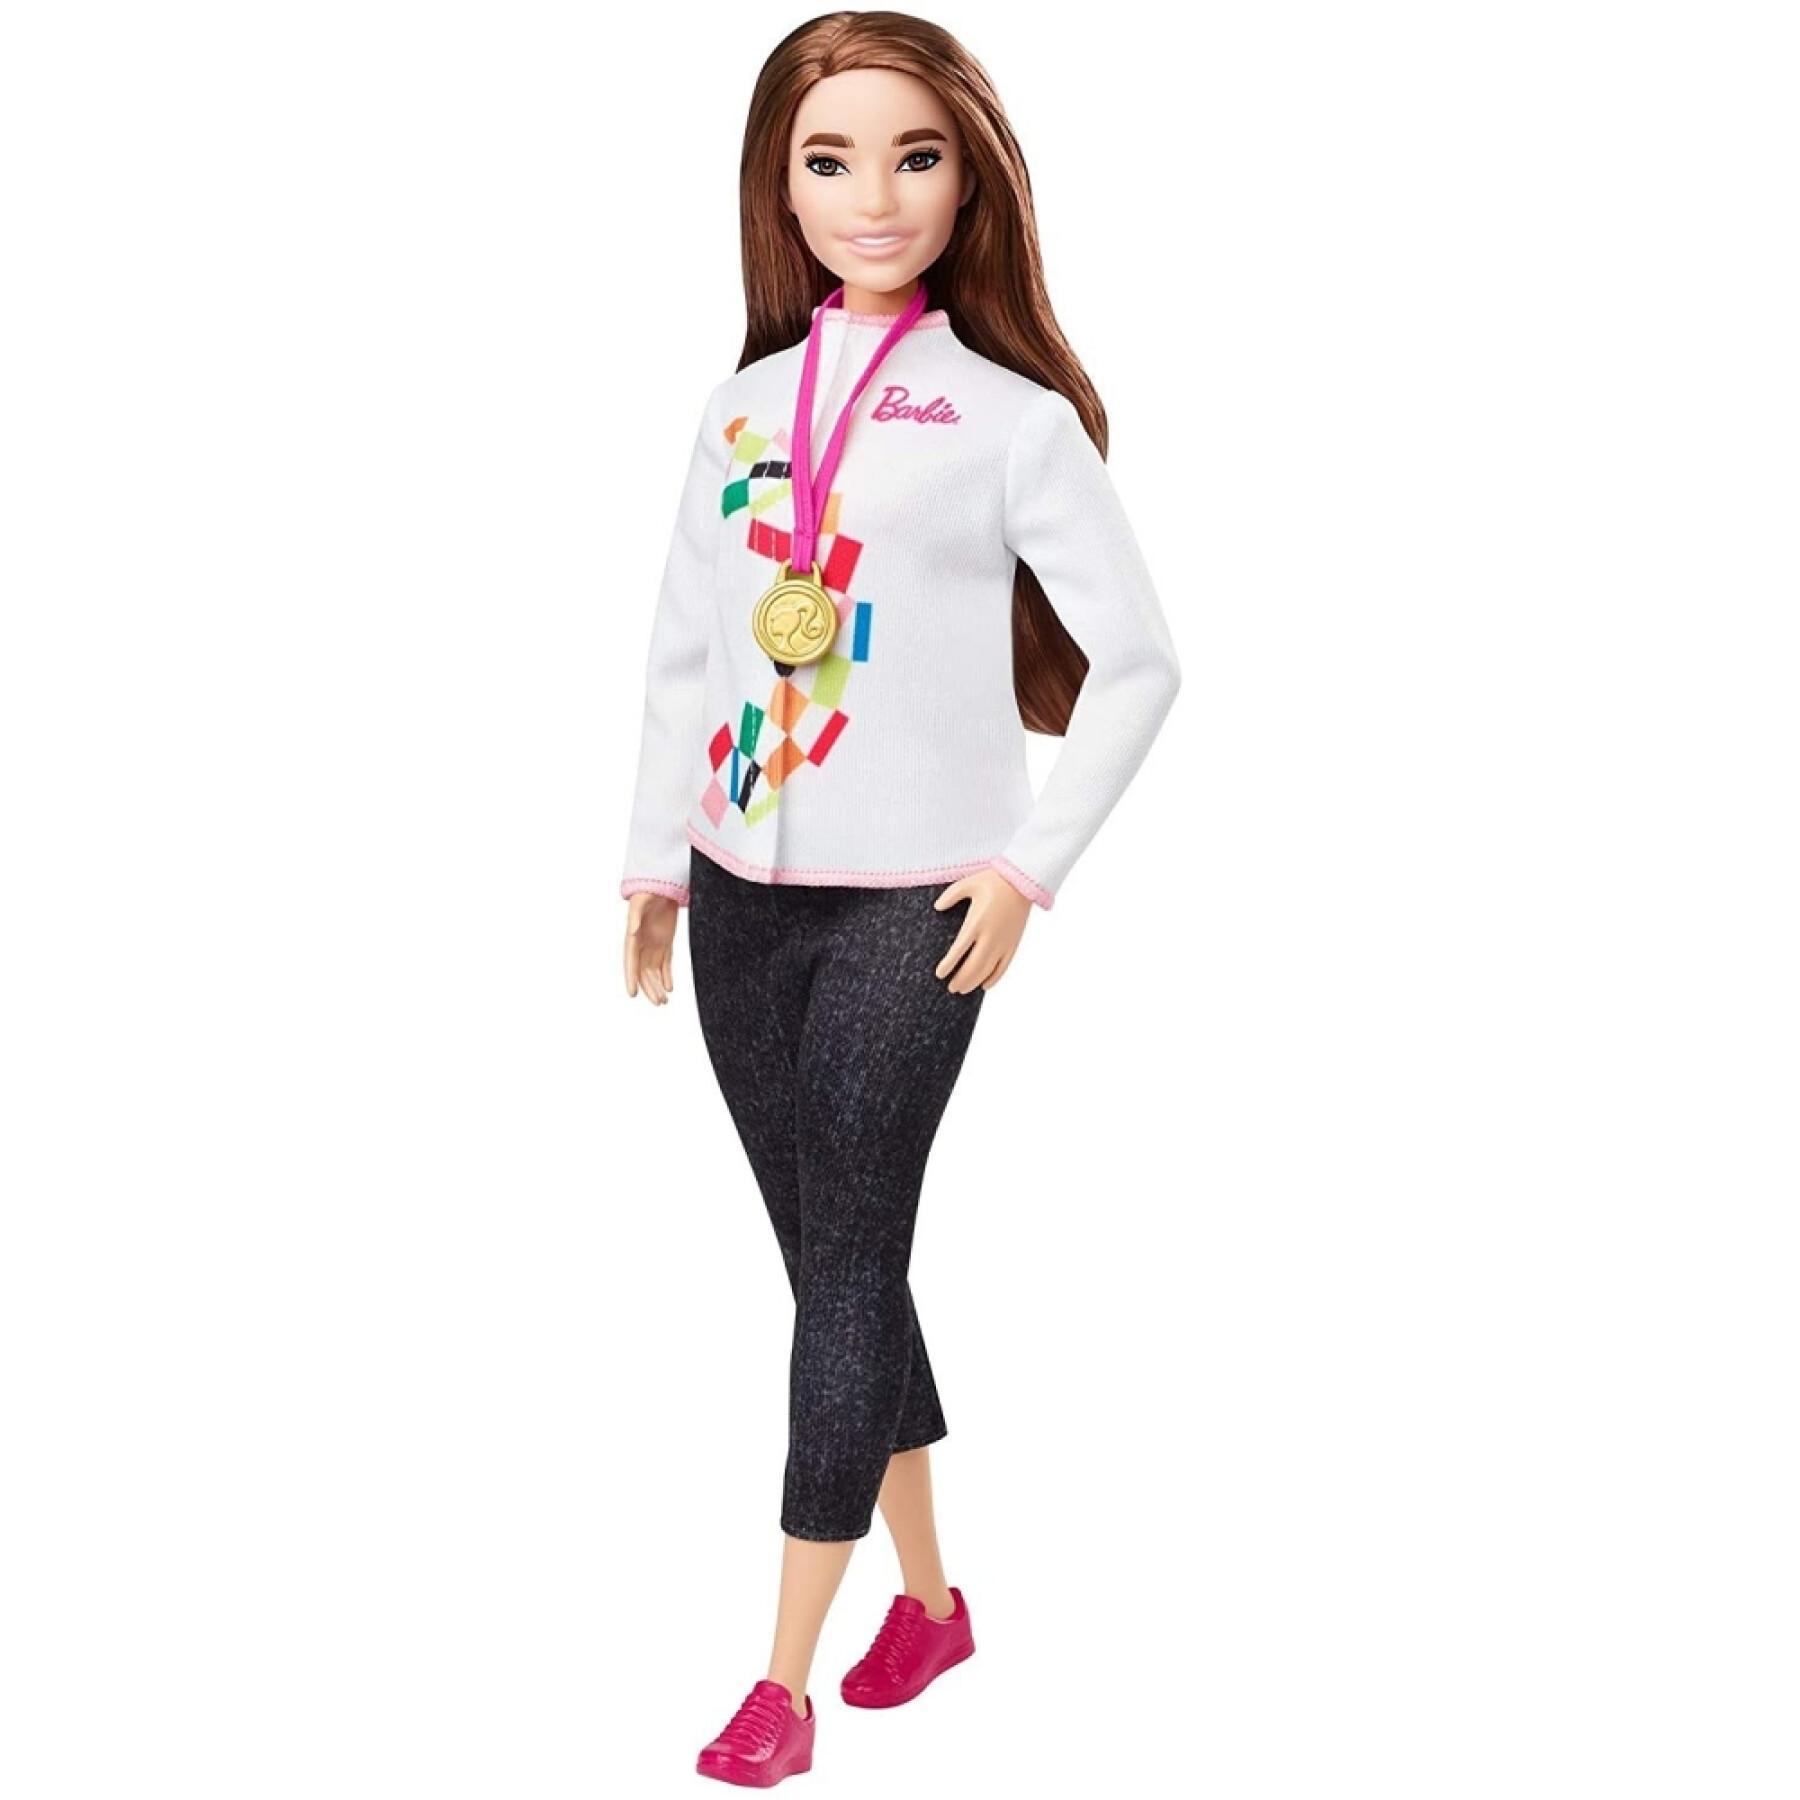 Bambola pattinatrice olimpica Barbie